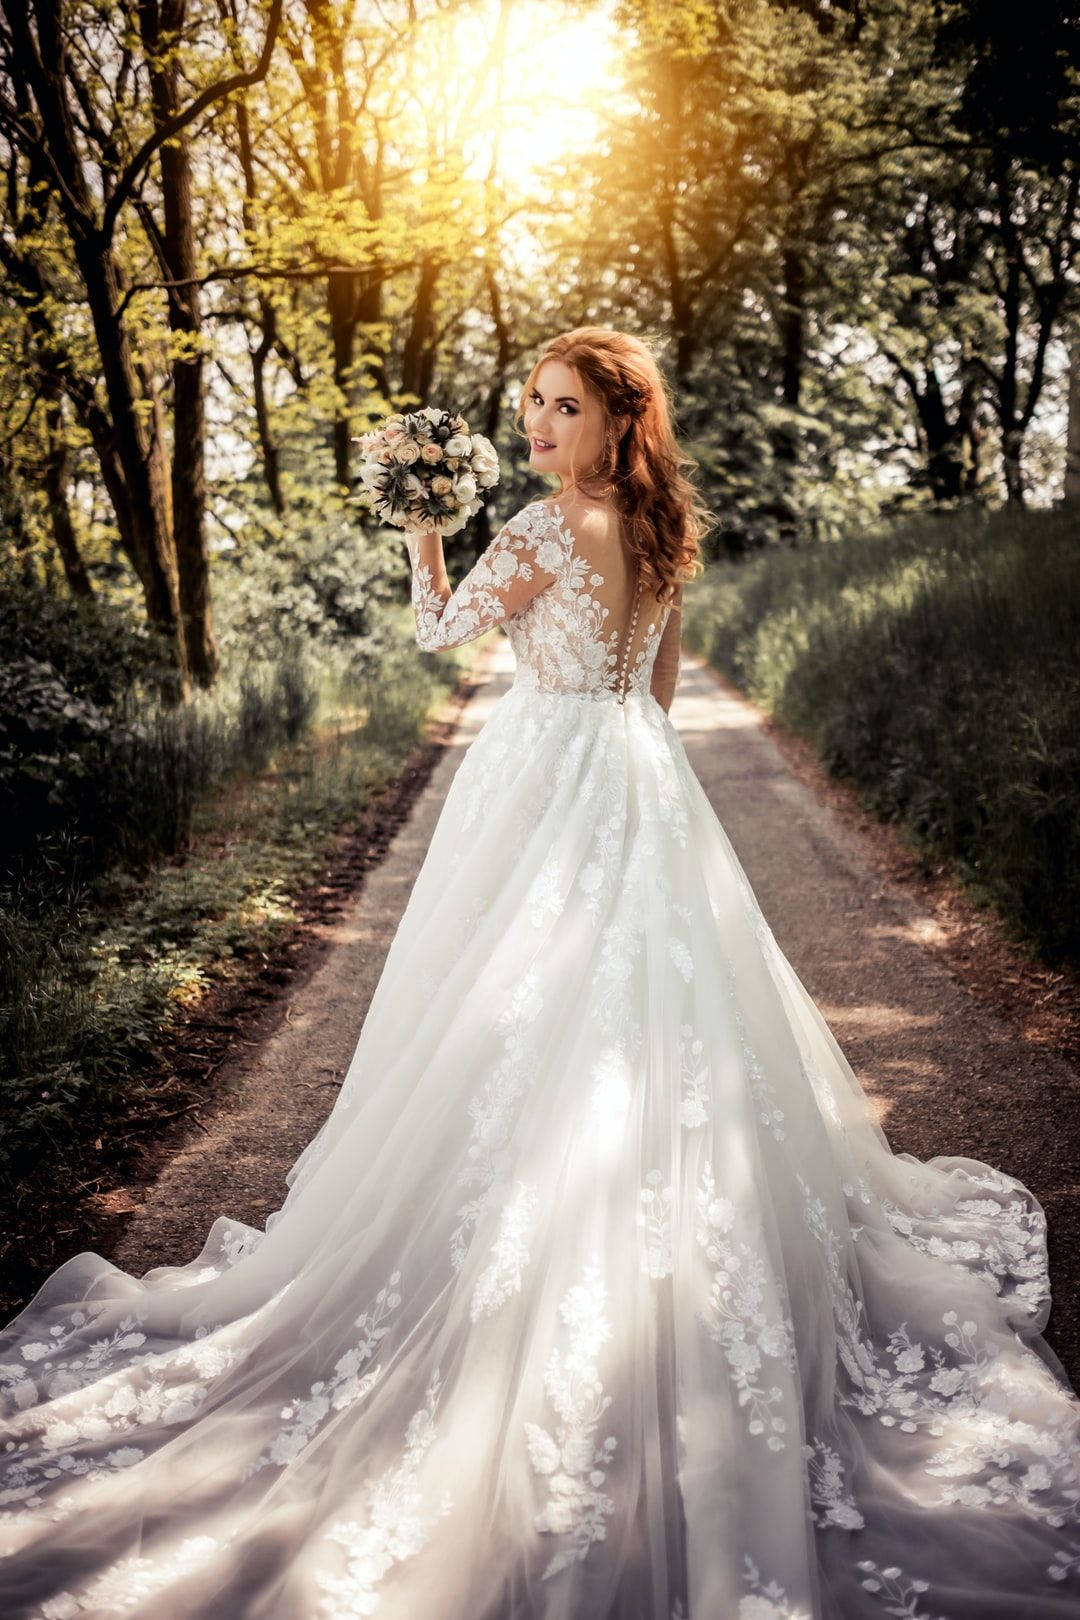 Stunning Bride In The Garden Background